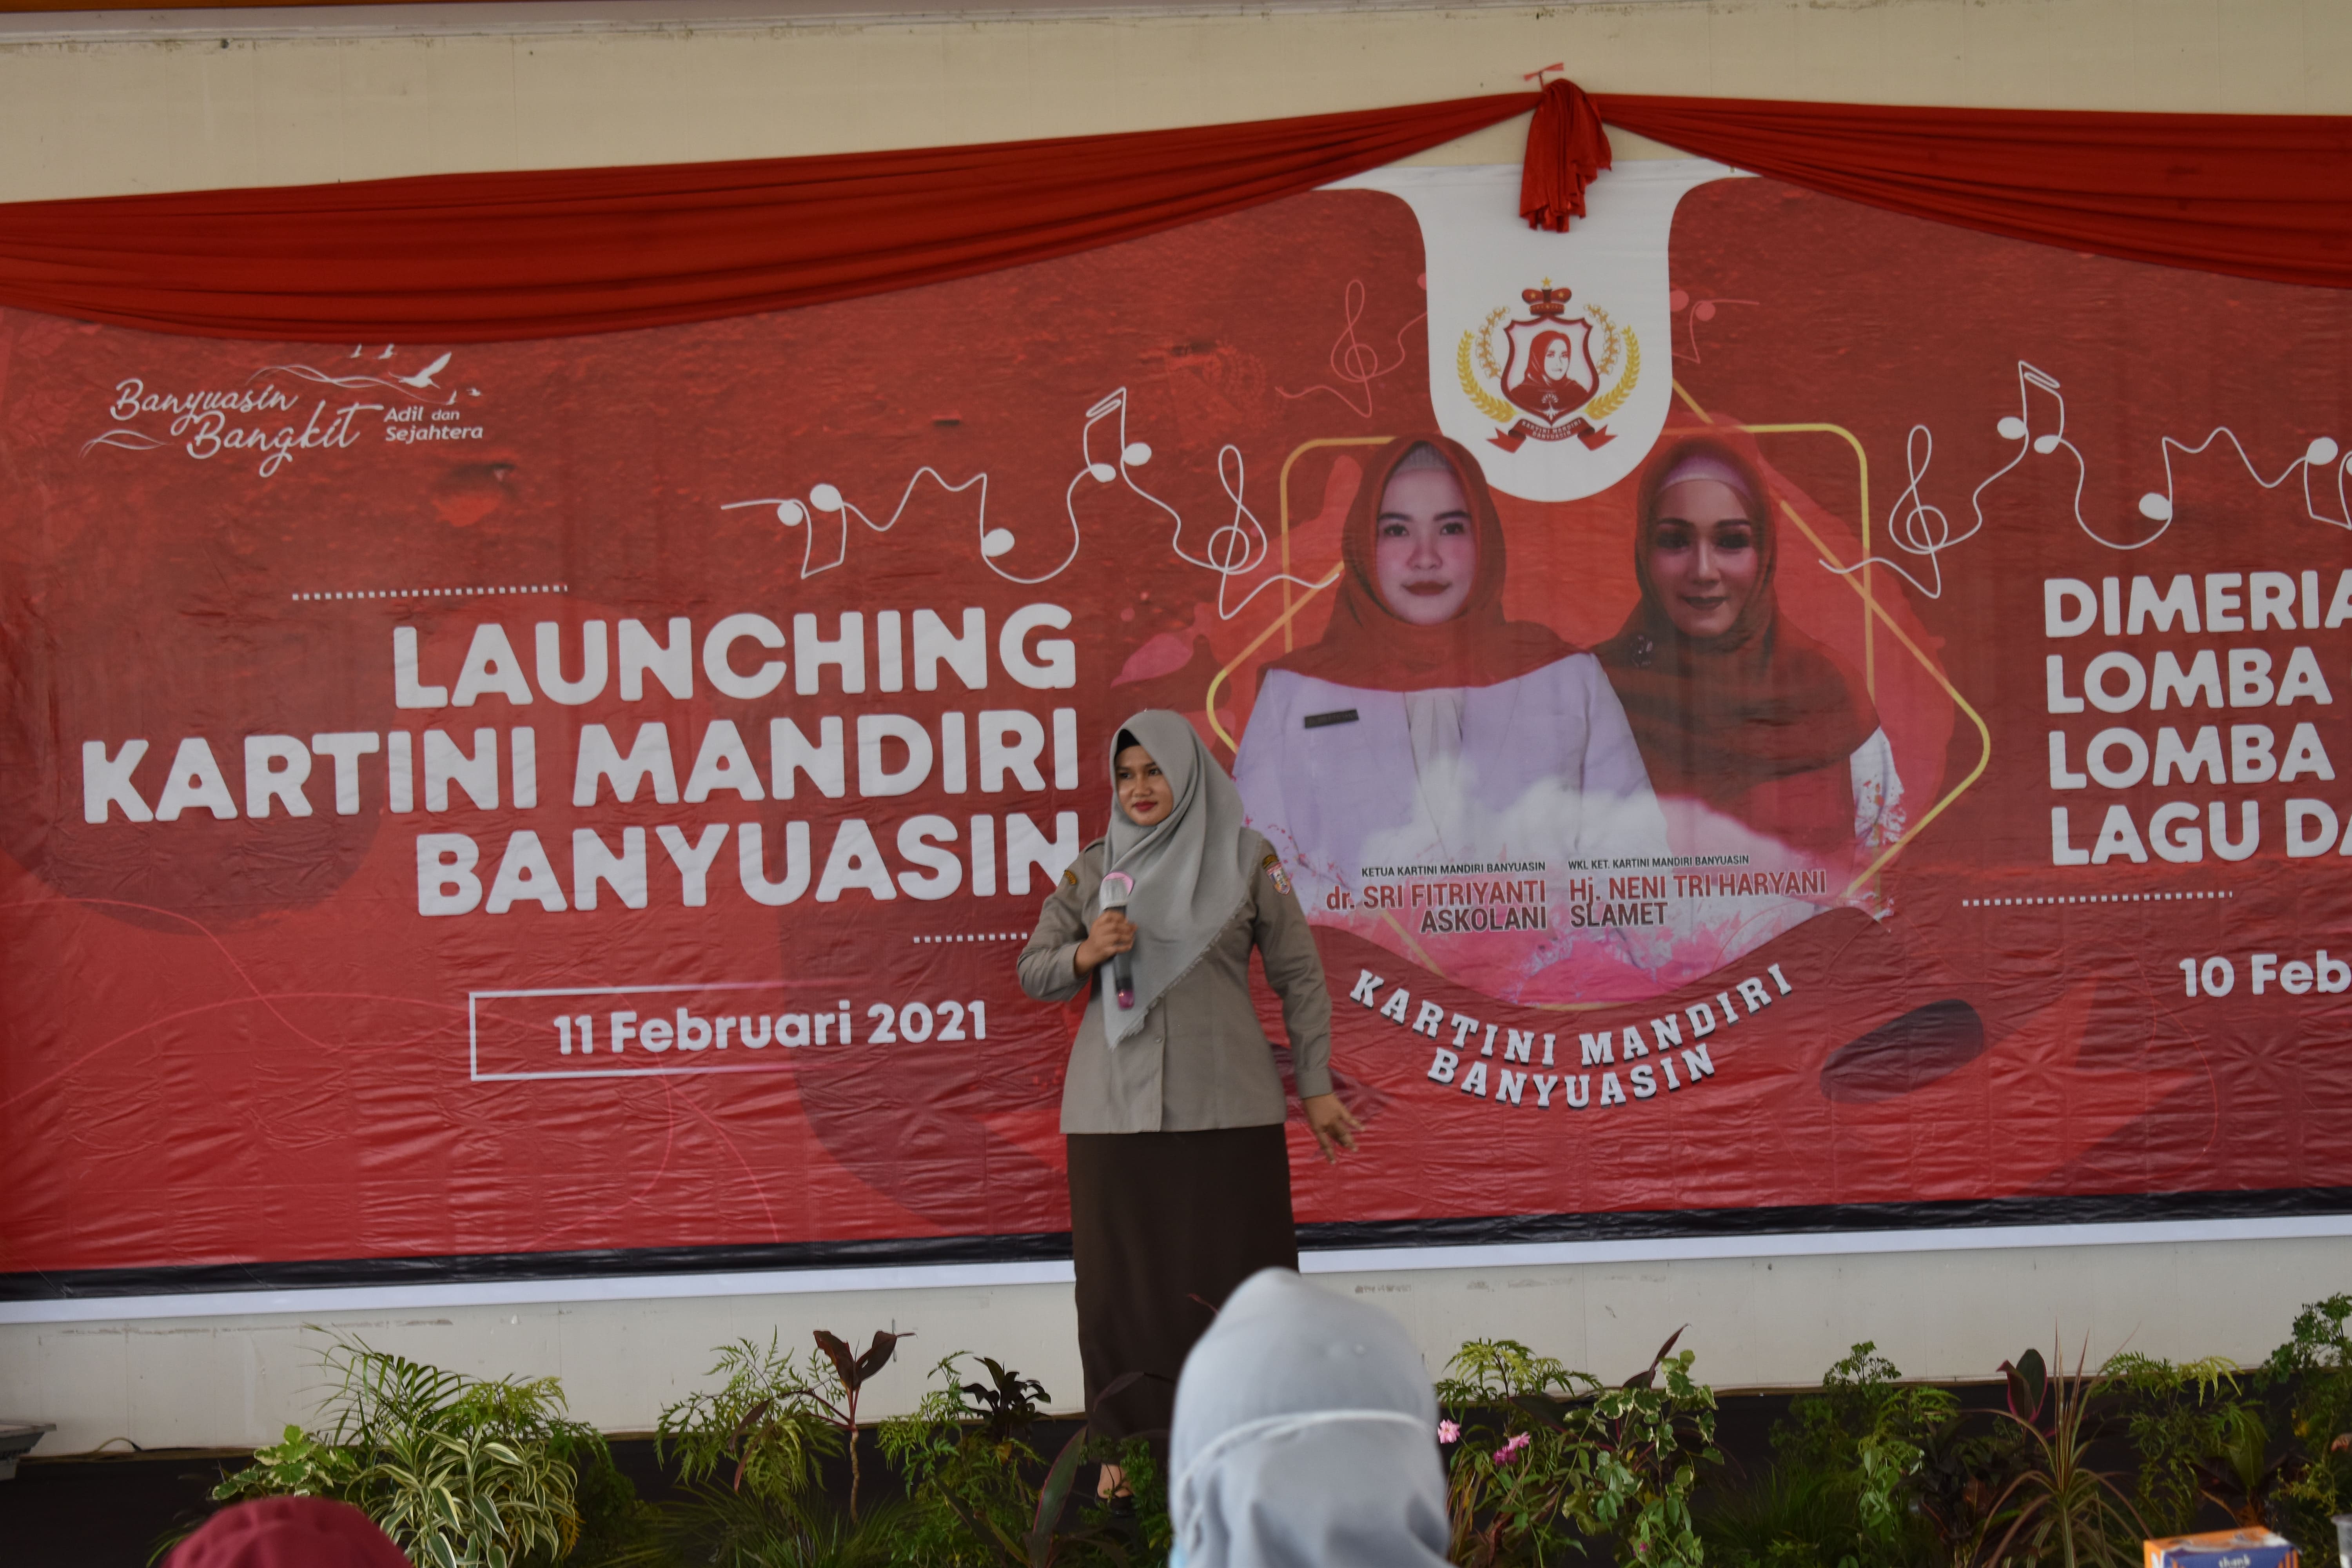 Launching Kartini Mandiri Banyuasin